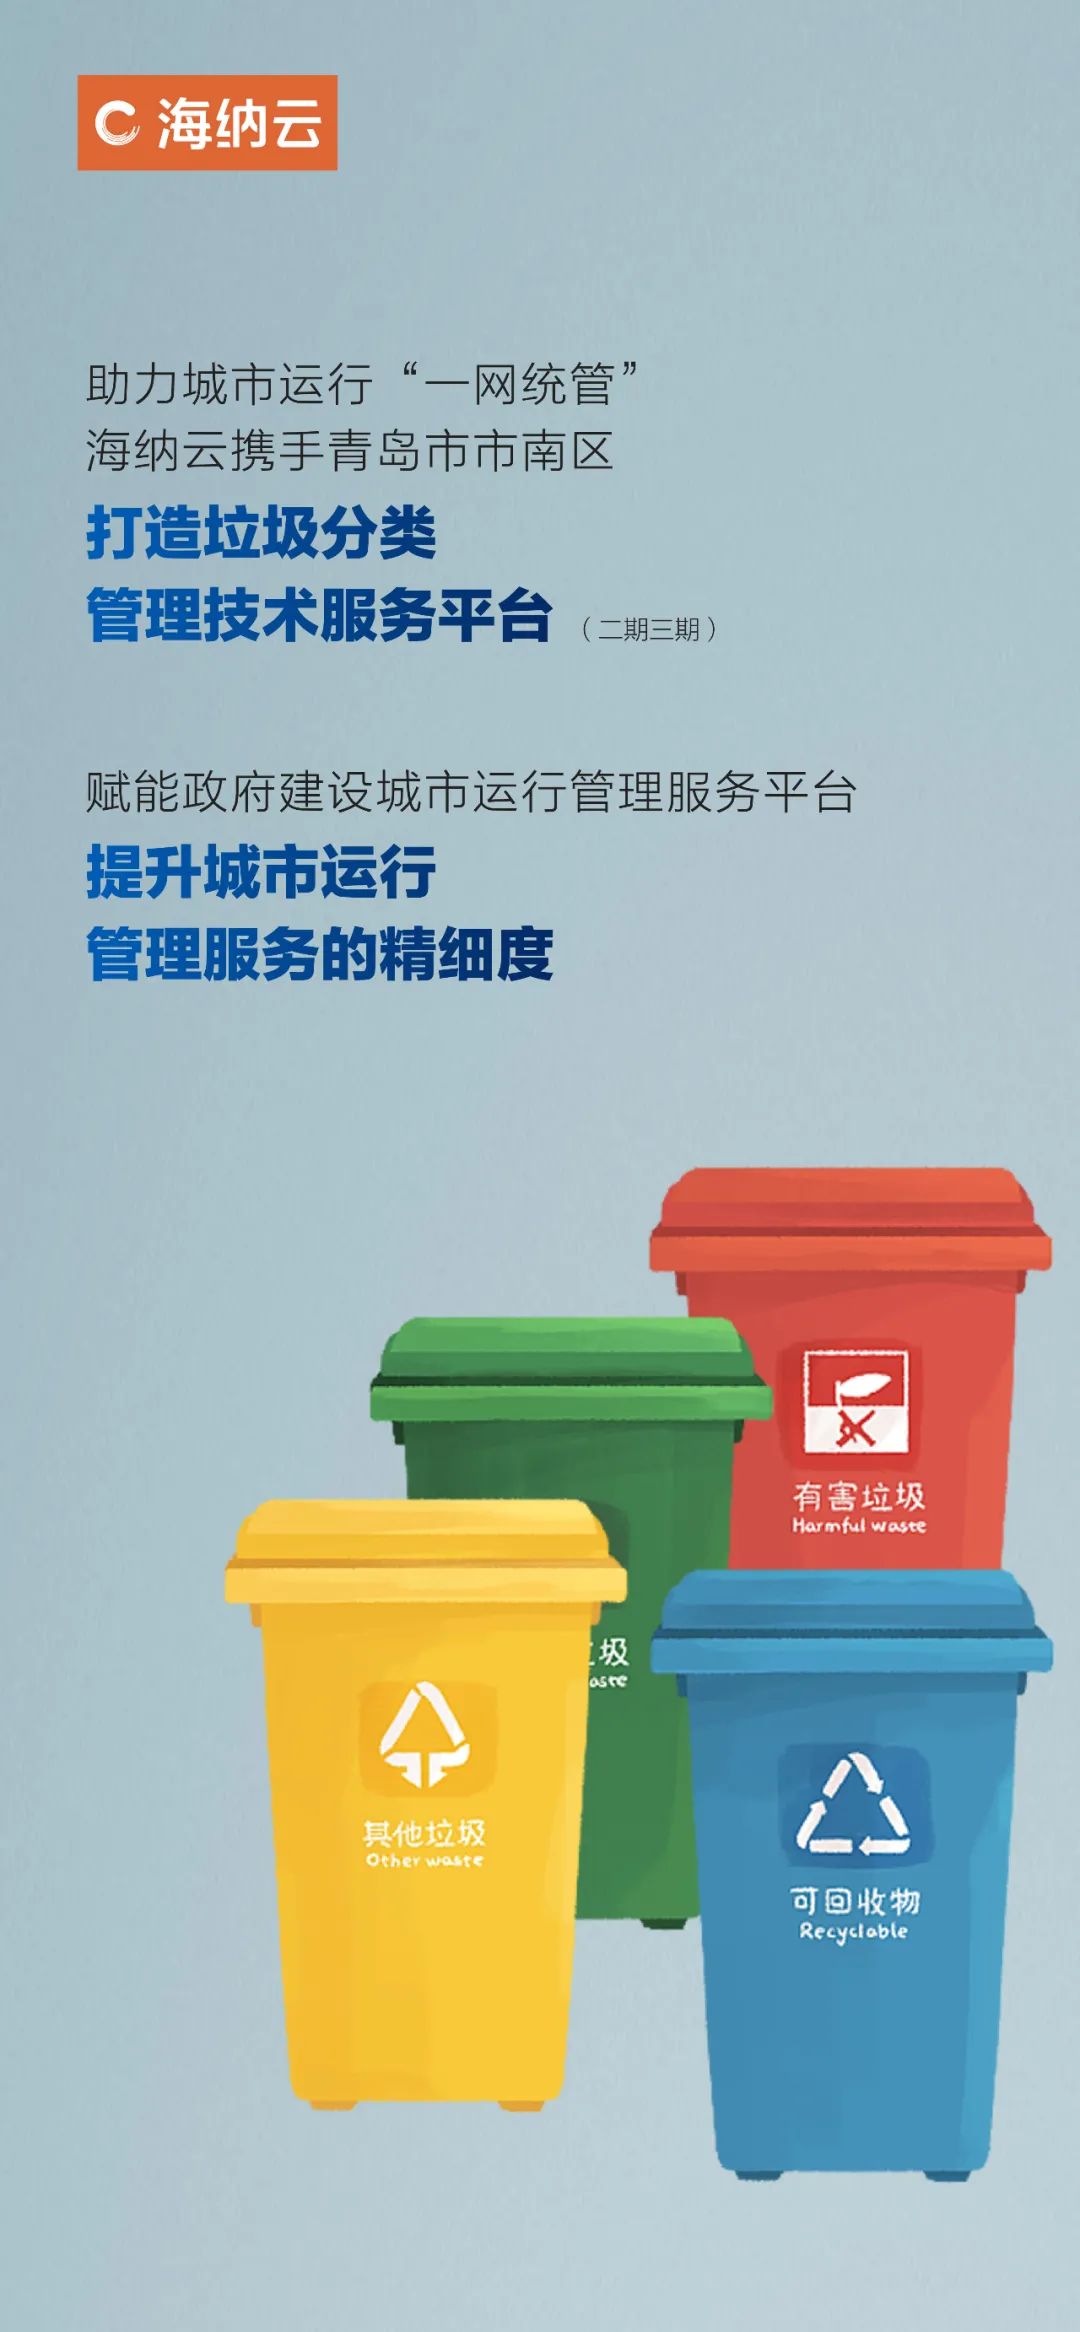 海纳云成功中标青岛市南区垃圾分类平台项目，助力城市运行“一网统管”